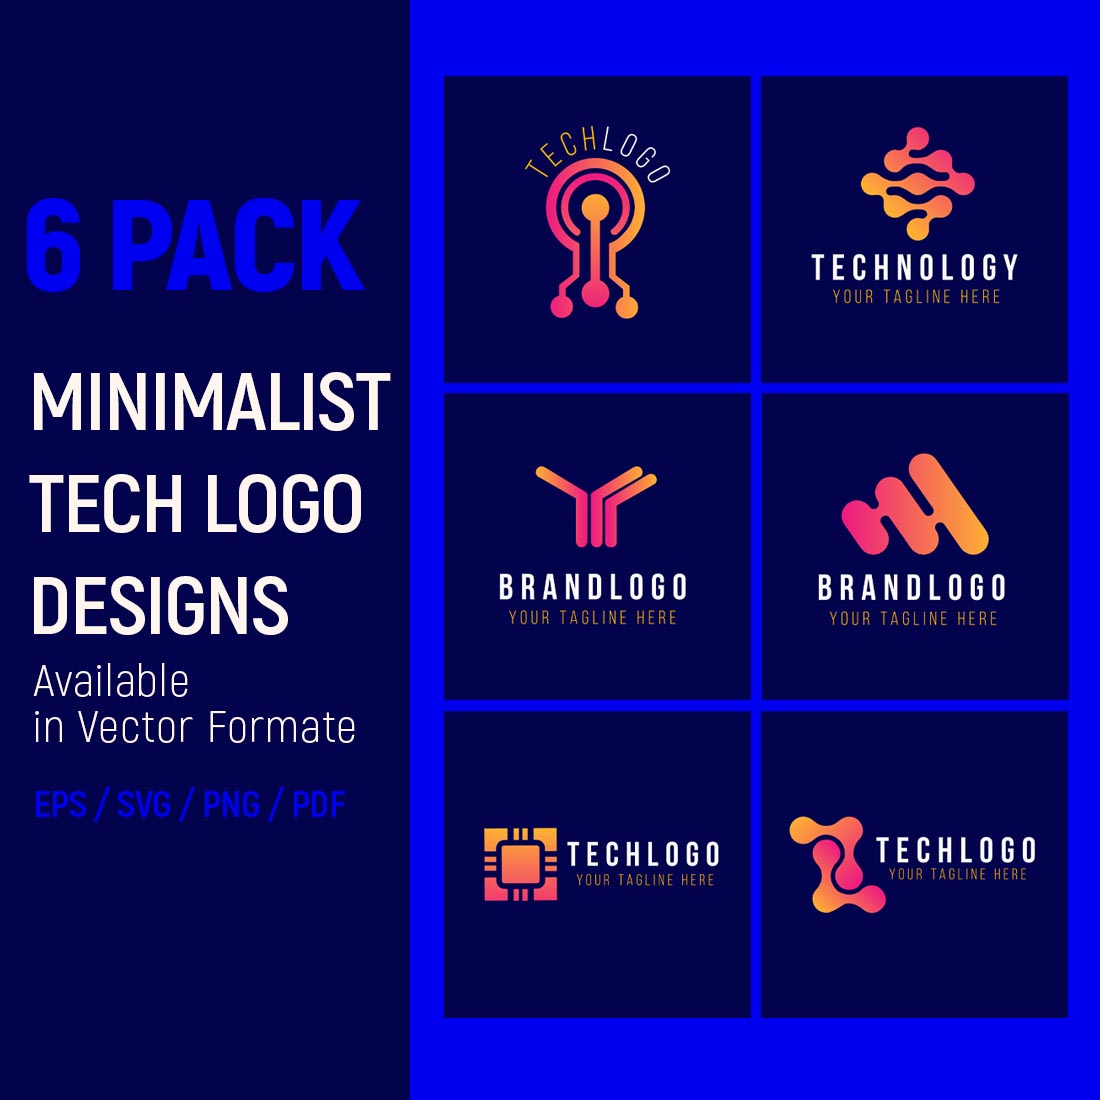 Minimalist Tech Logo Design Bundle preview image.